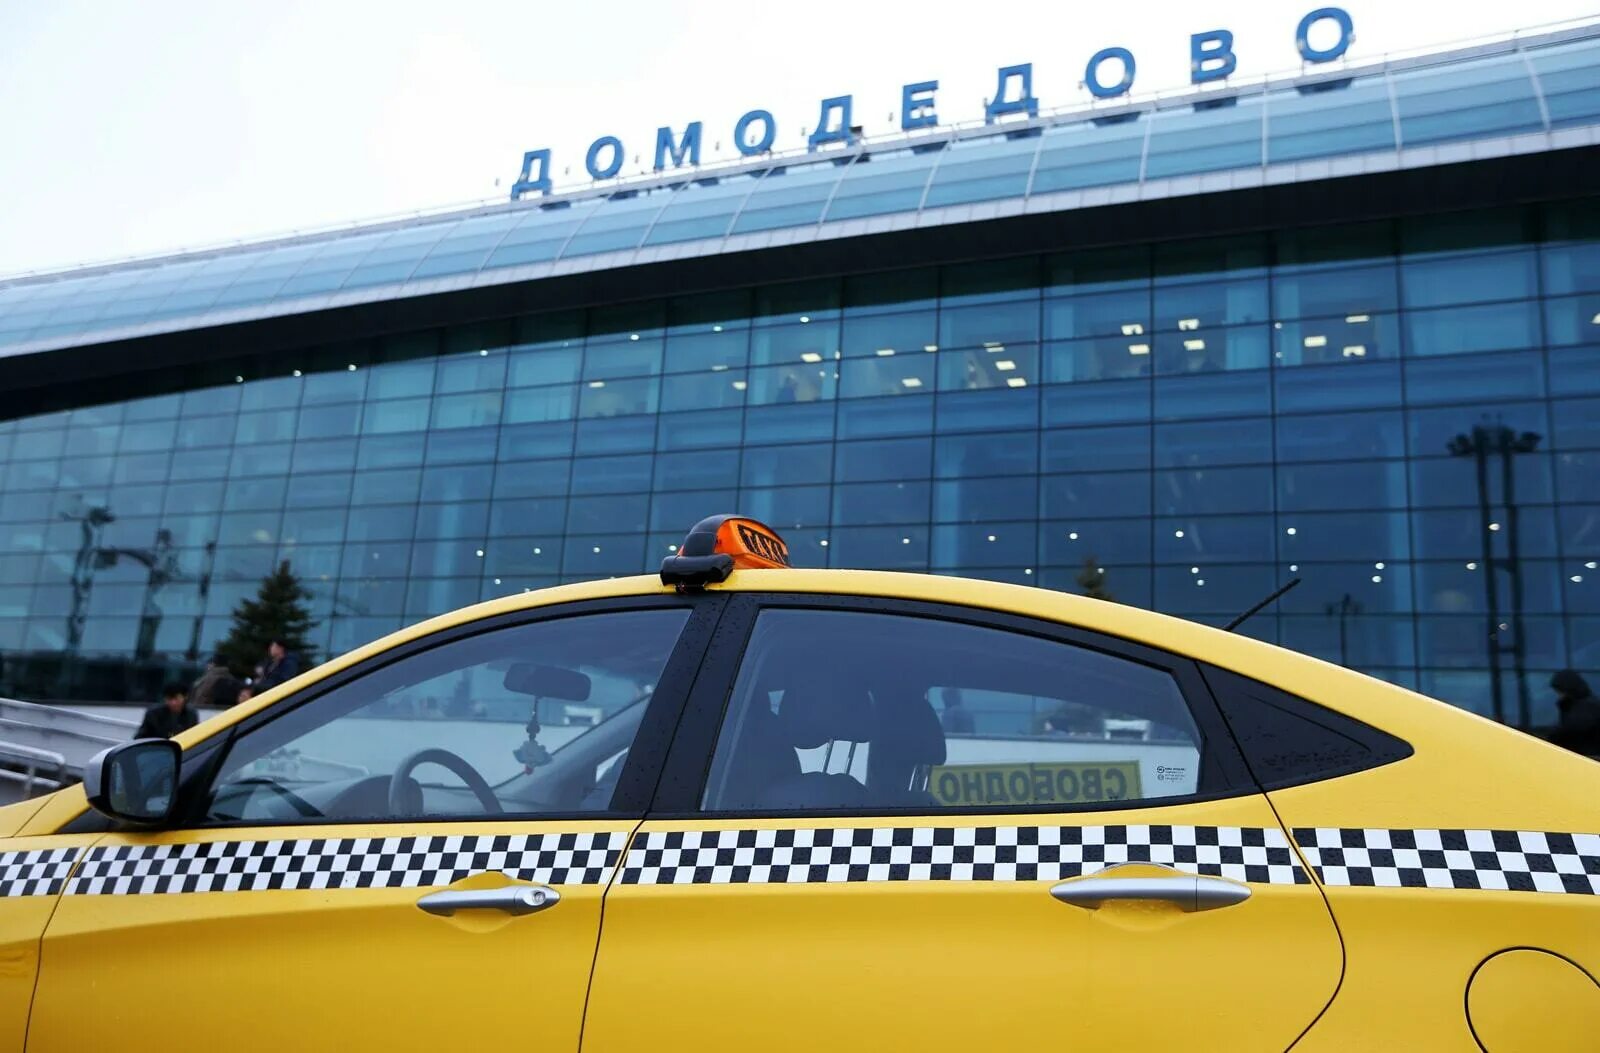 Аэропорт Домодедово такси. Такси около аэропорта Домодедово. Шереметьево-Домодедово такси. Такси в аэропорт Шереметьево.